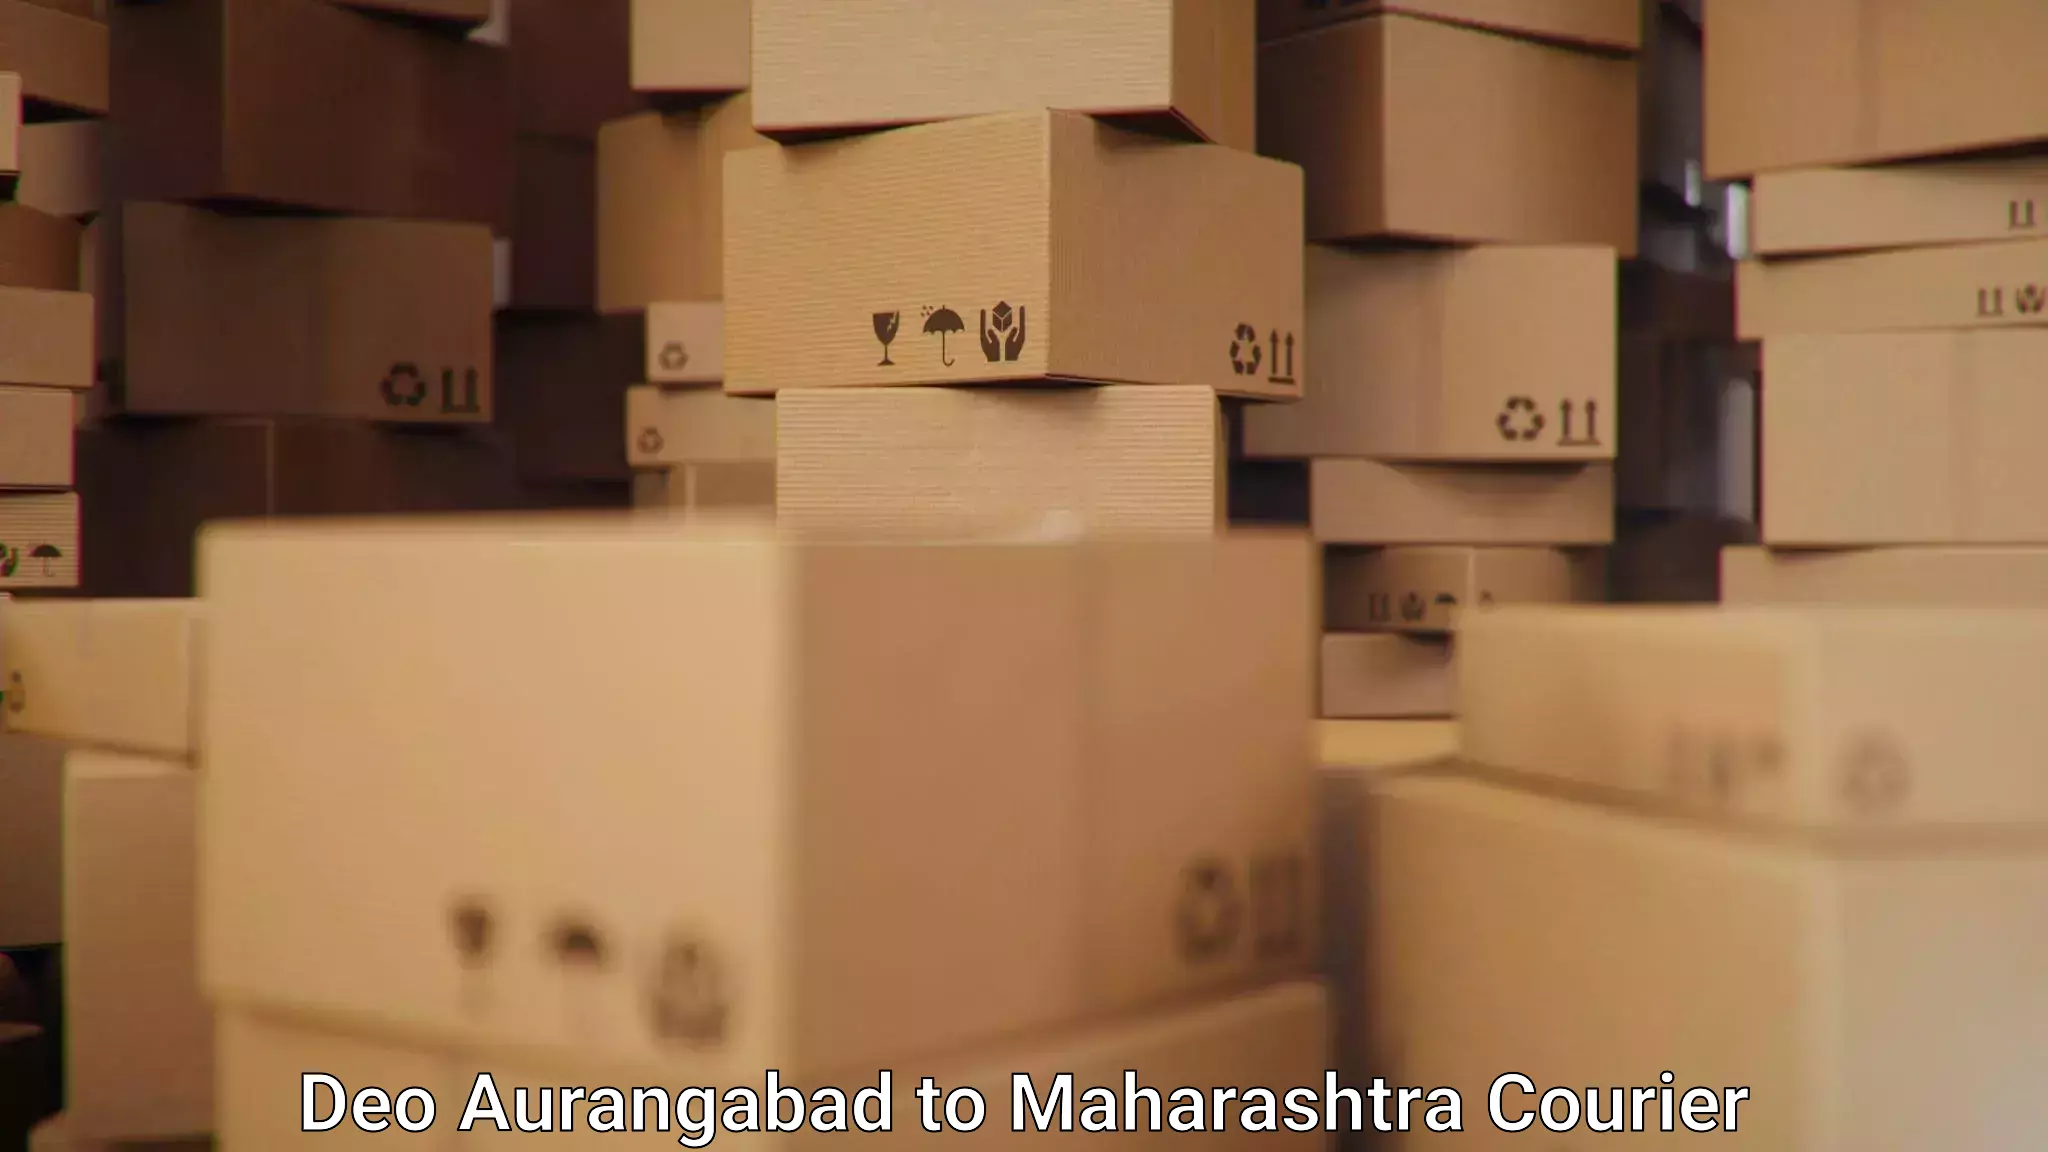 Efficient parcel service Deo Aurangabad to Vasai